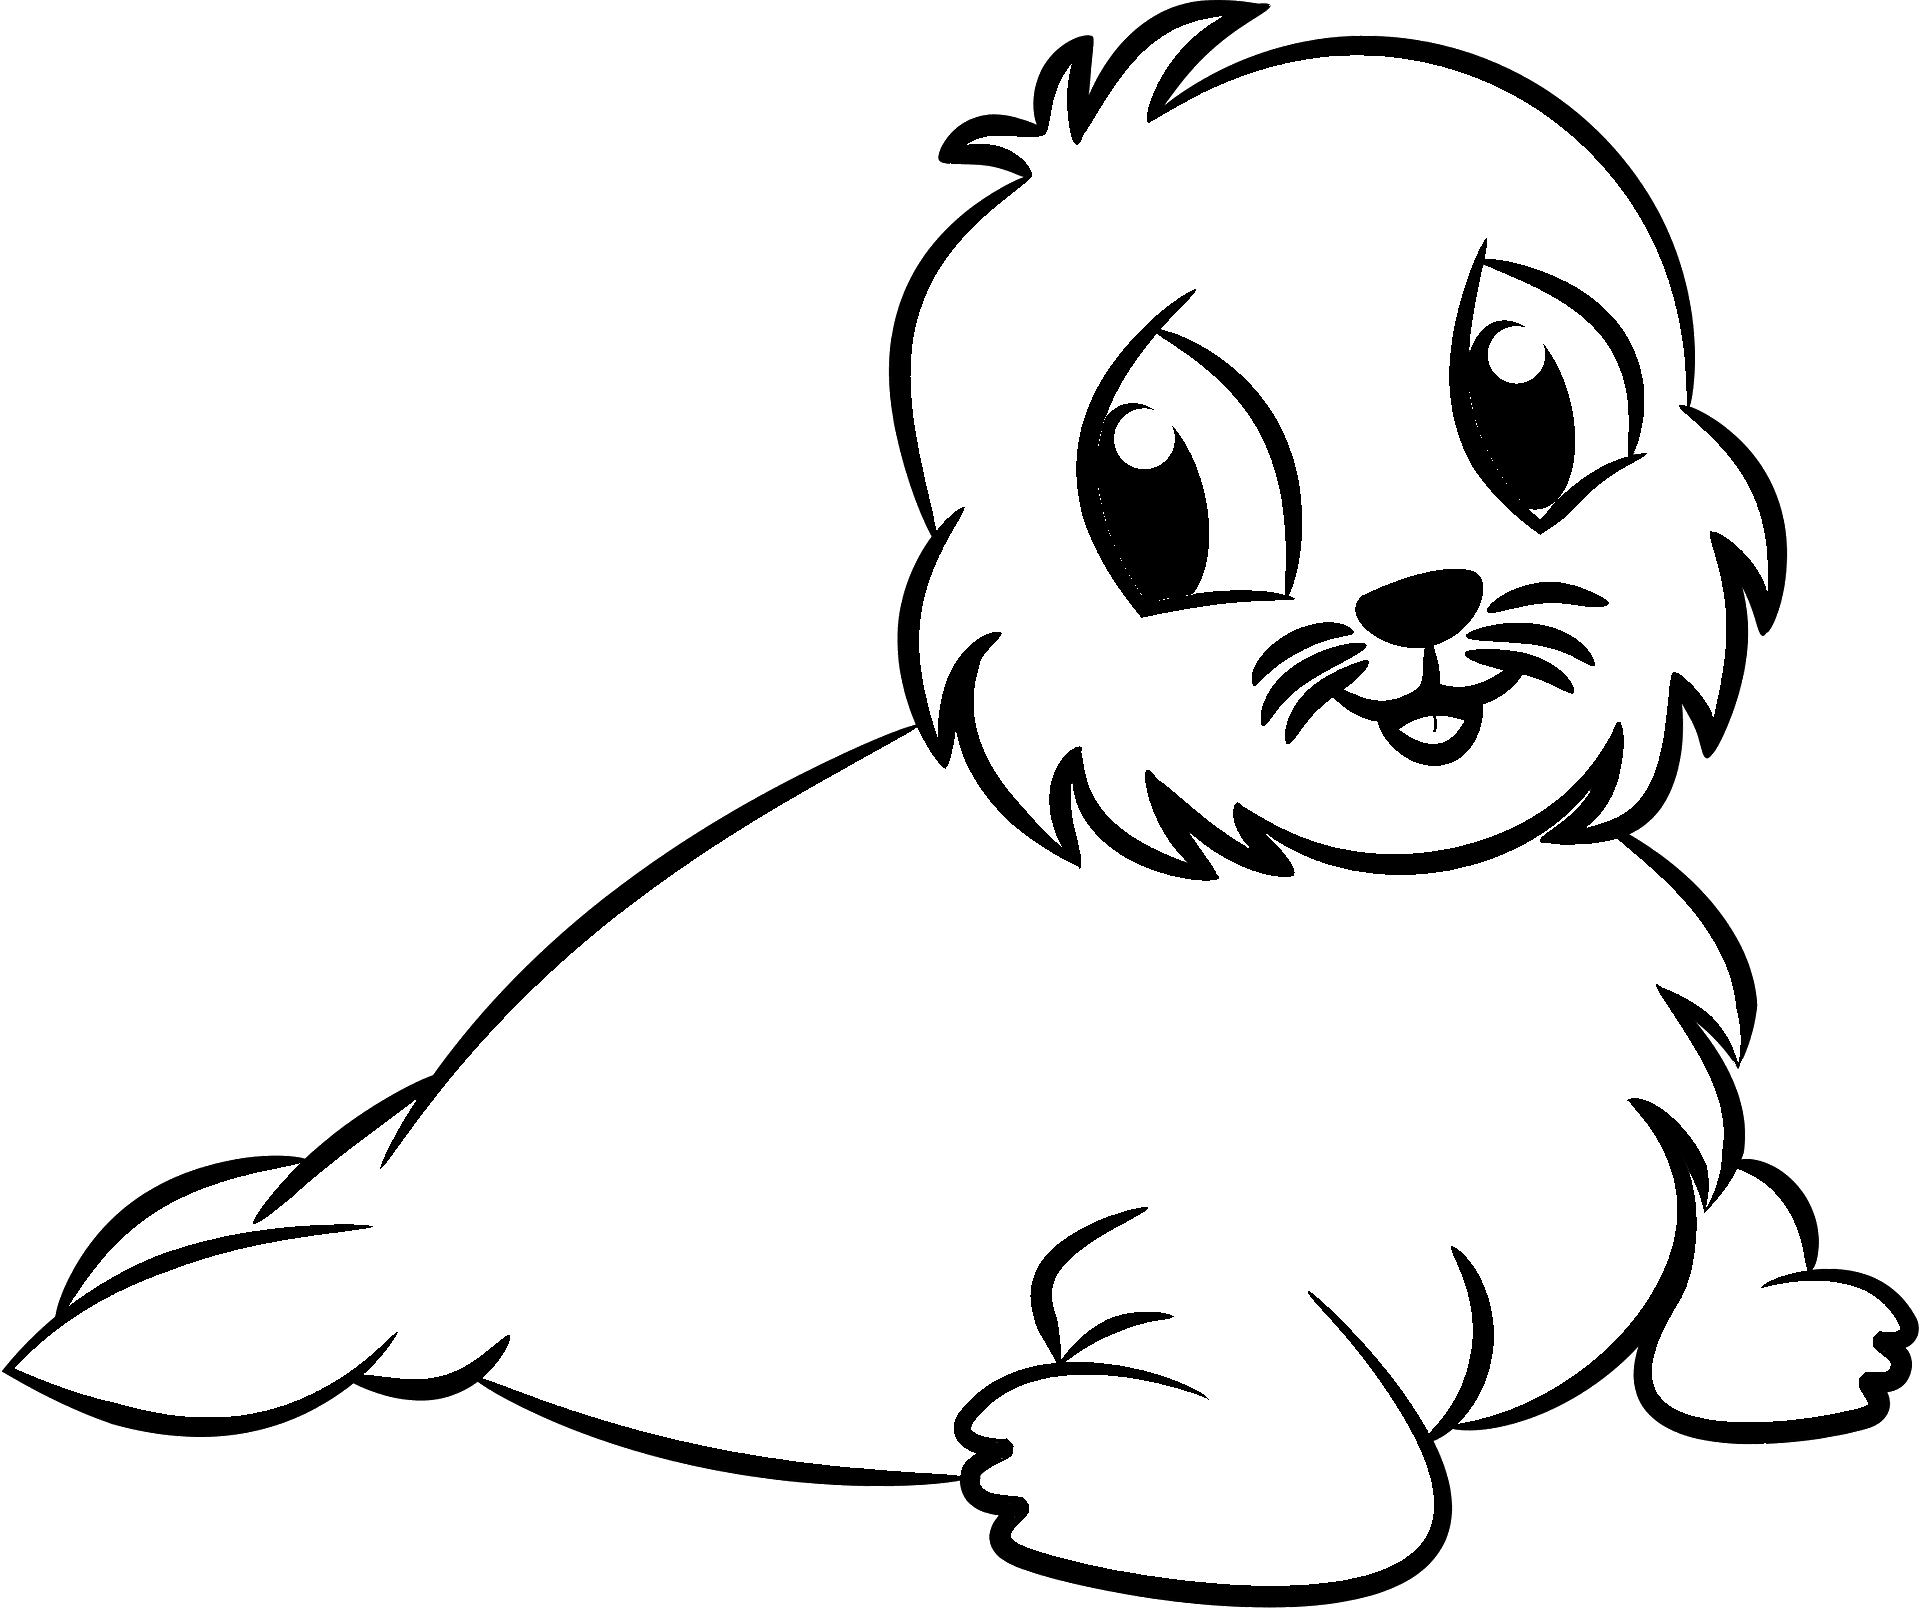 Disegno da colorare di una foca